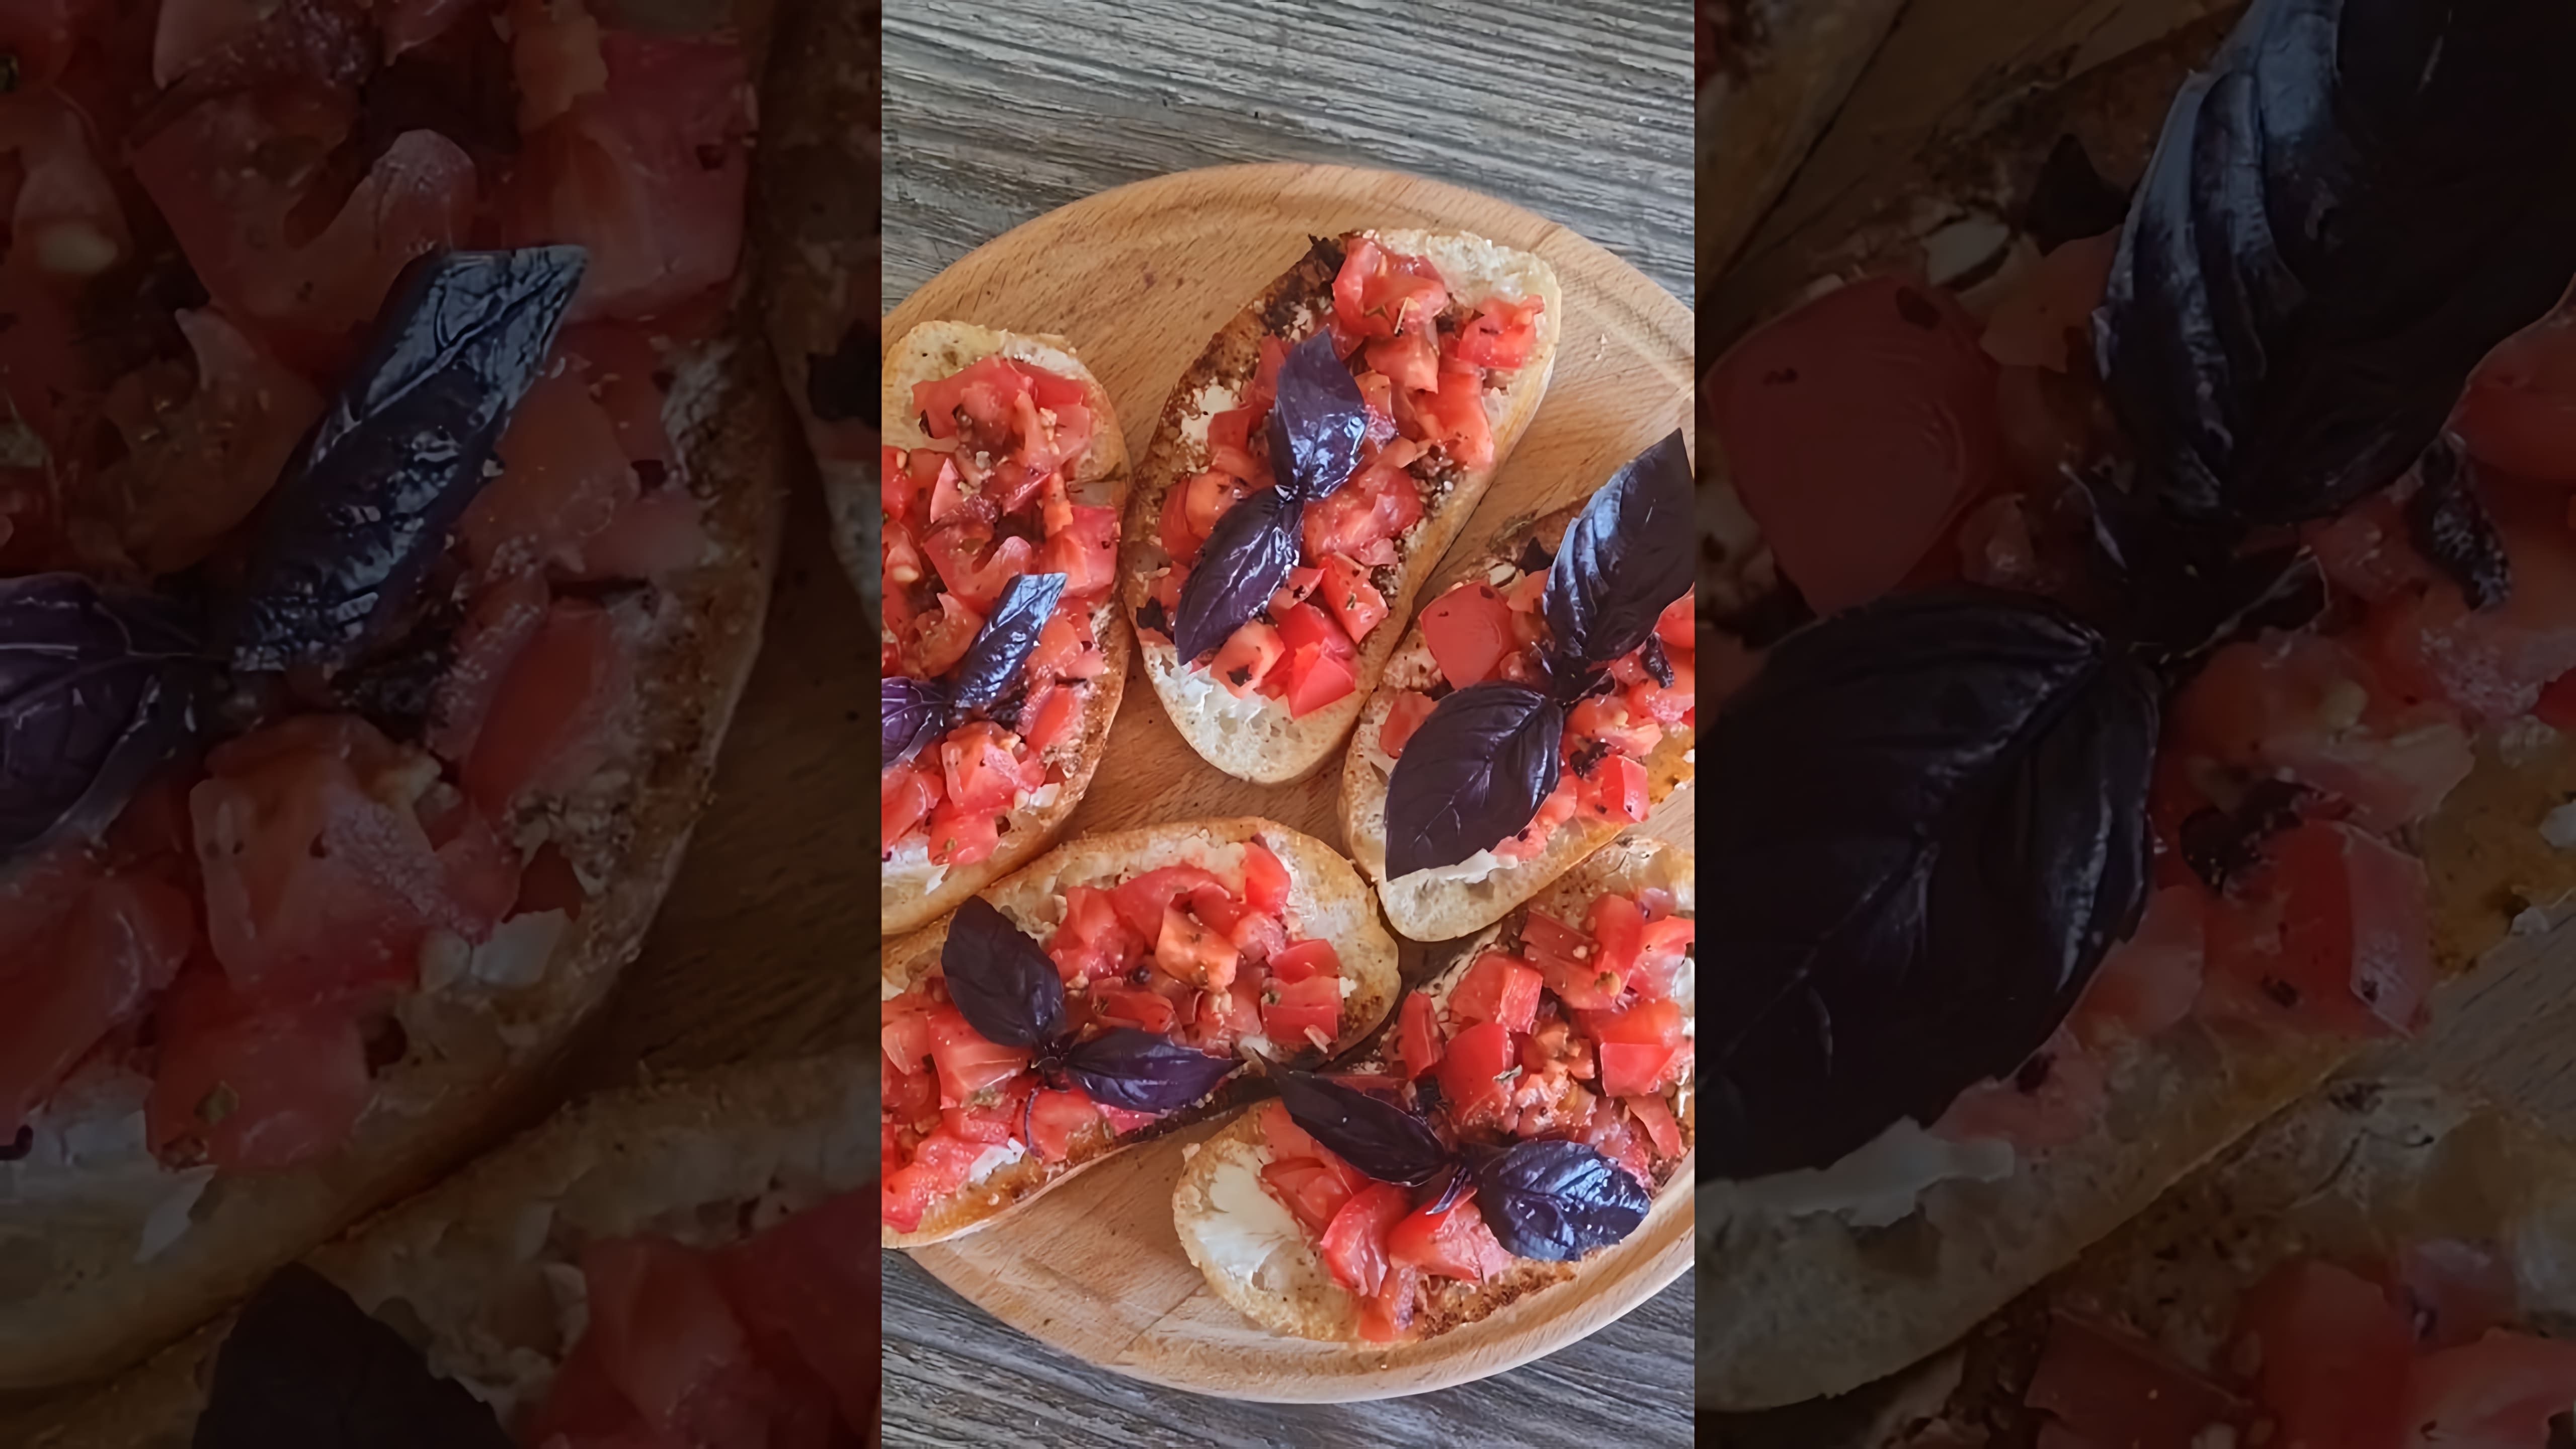 Итальянские брускетты с помидорами и базиликом - это вкусная закуска или завтрак, который можно приготовить быстро и легко